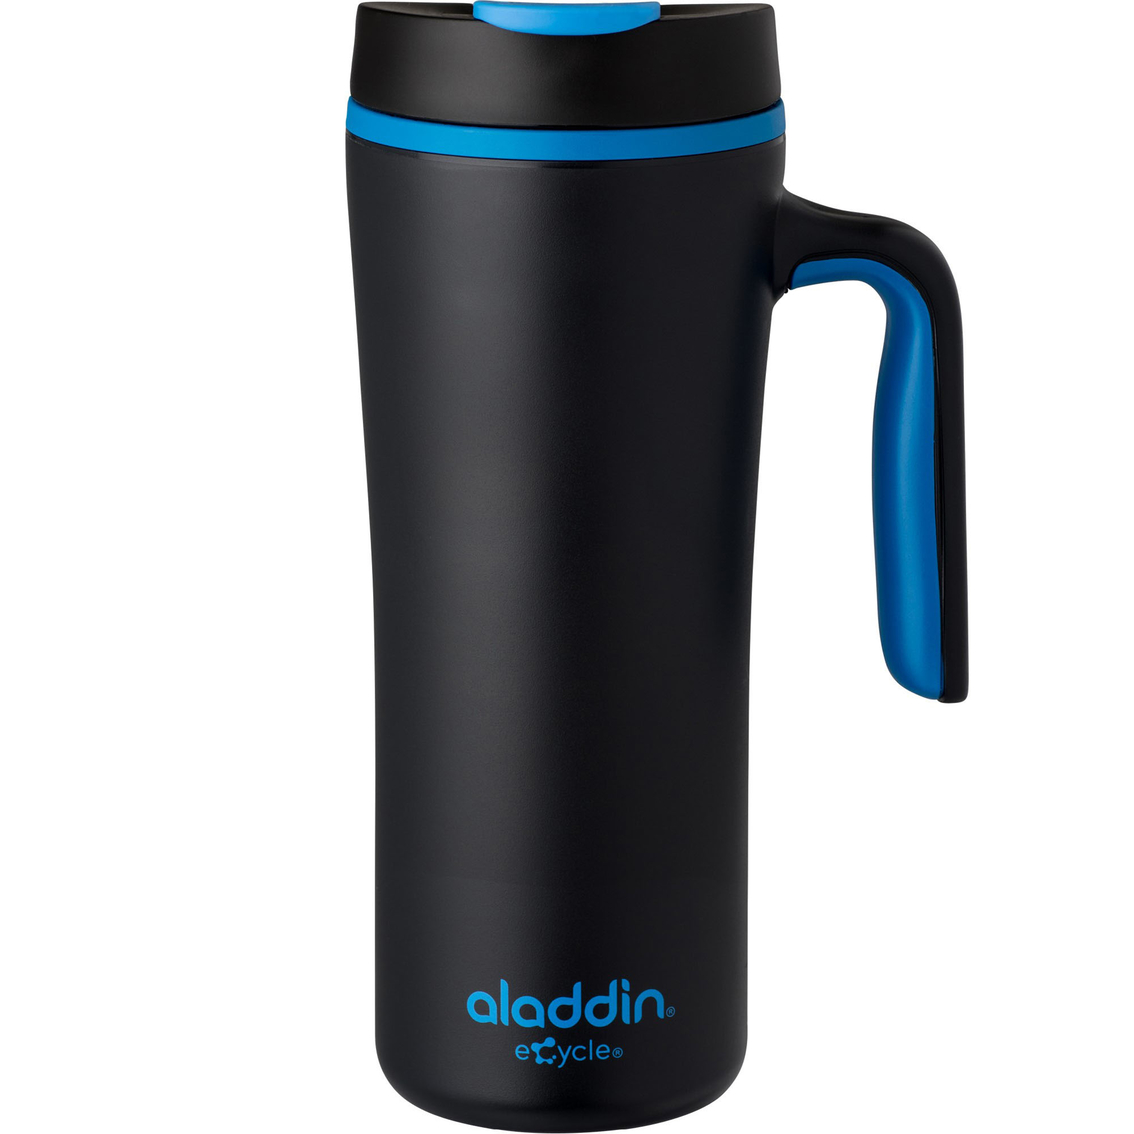 aladdin 16 oz travel mug